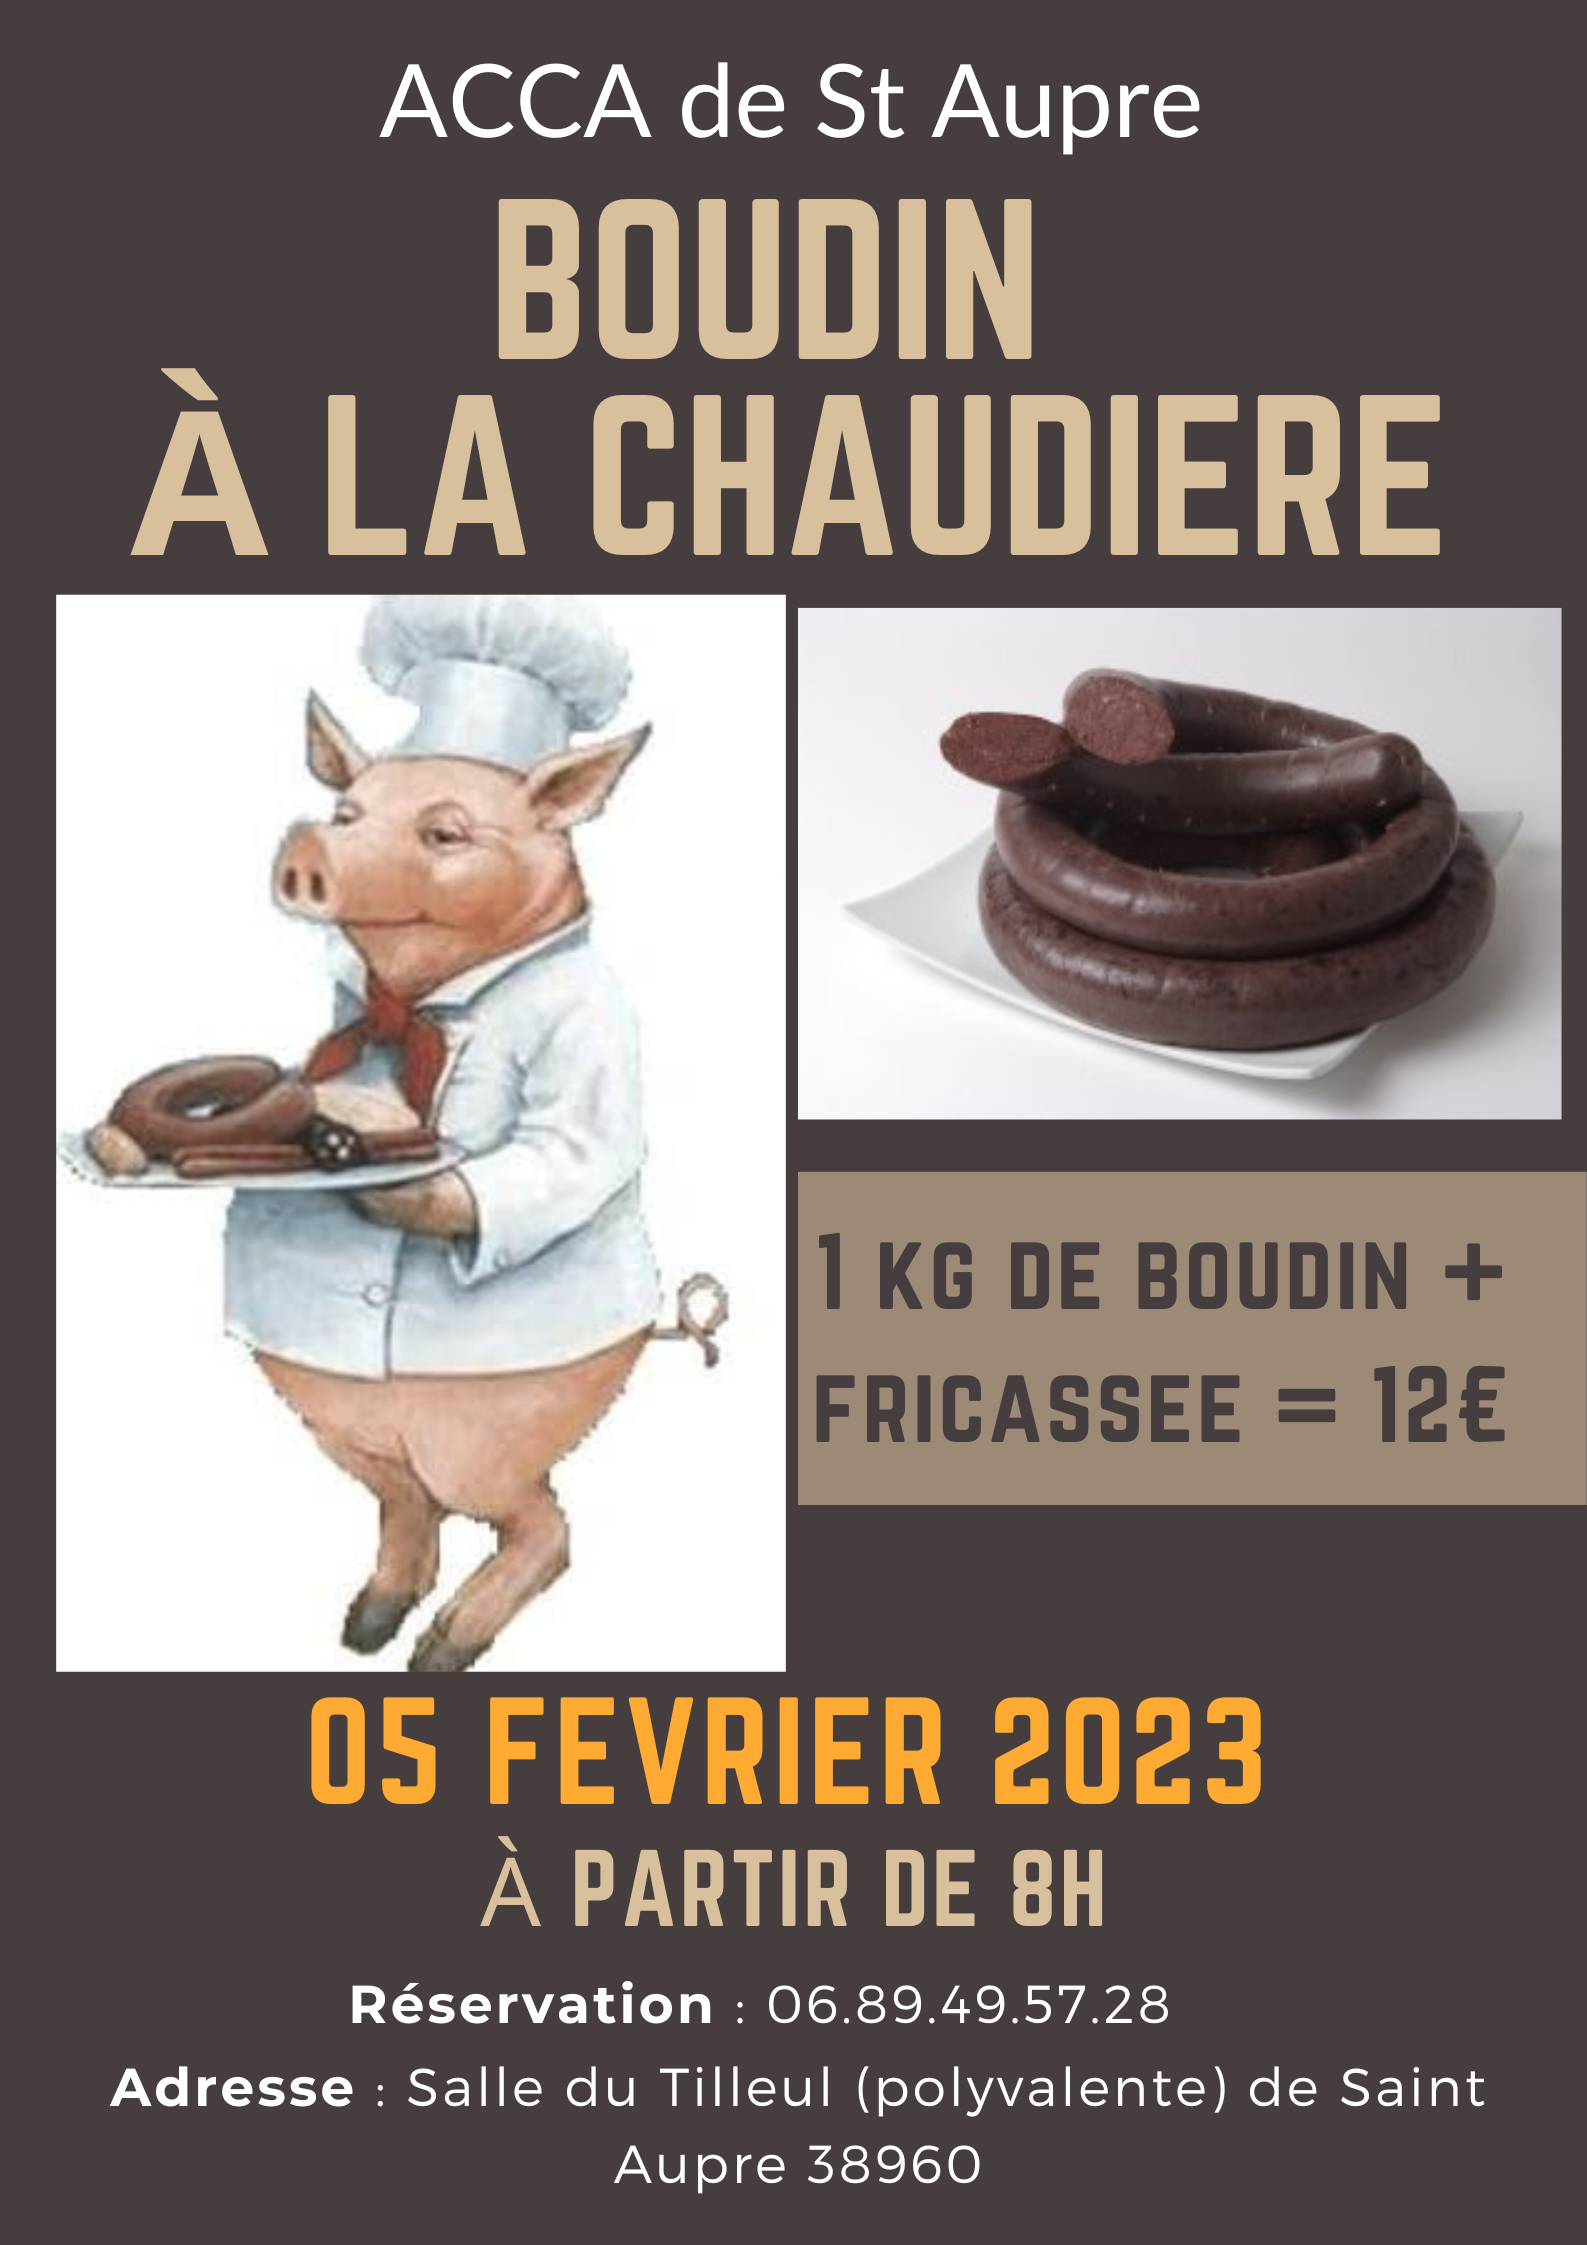 Image de couverture - ACCA Saint-Aupre : Matinée Boudin à la chaudière Dimanche 5 février à partir de 8h